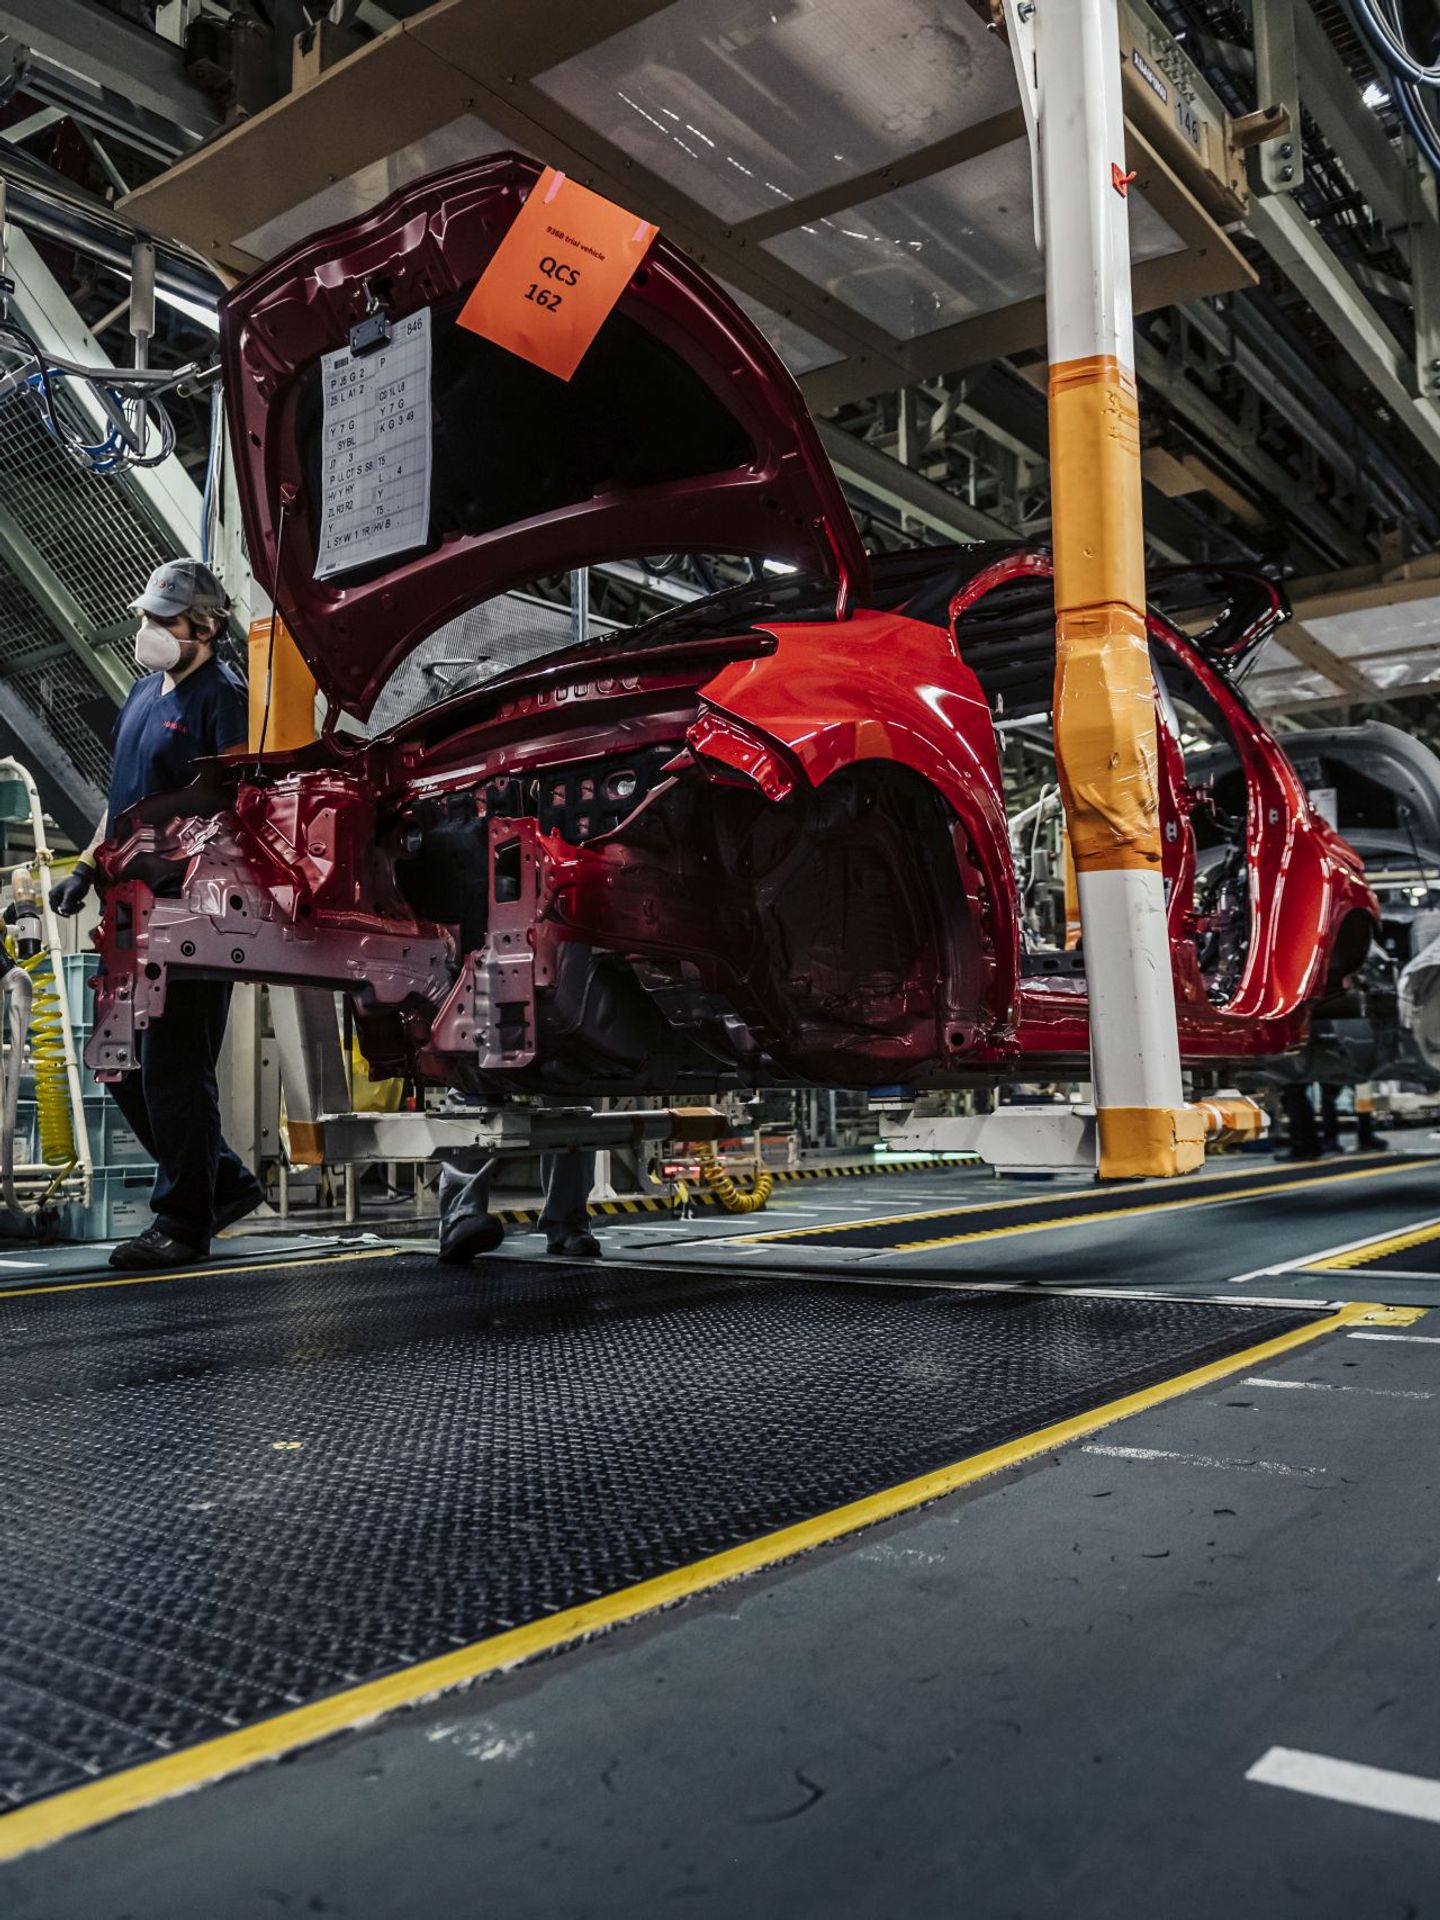 Výroba Toyoty Yaris ve středočeském Kolíně - Podívejte se na výrobní linky Toyoty v Kolíně (5/18)